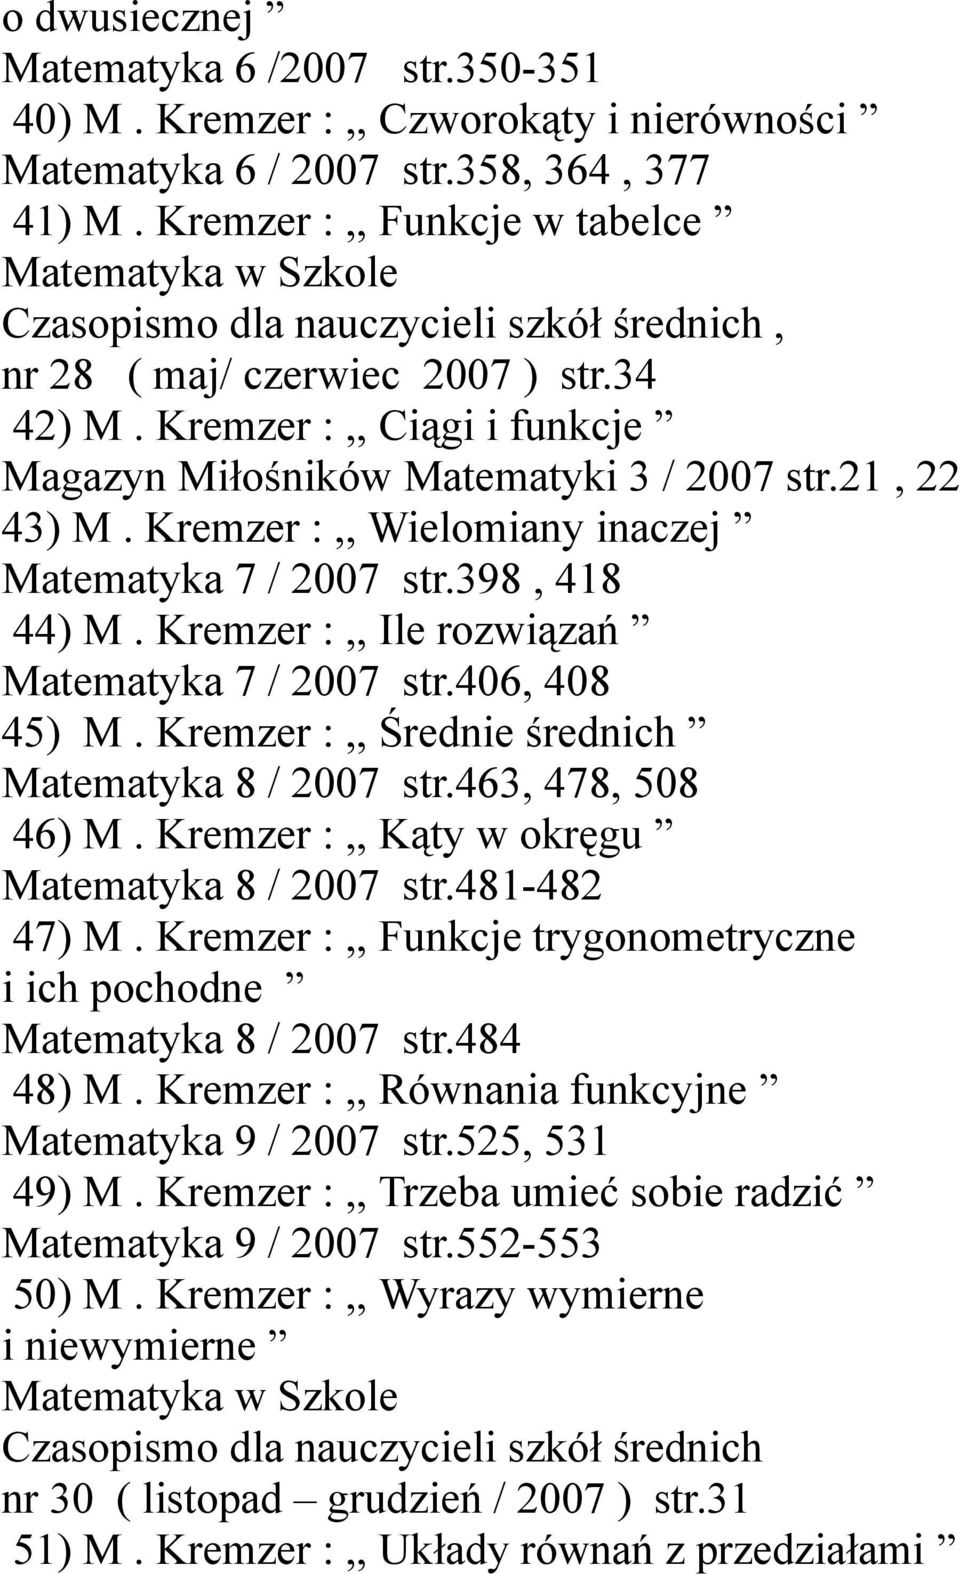 Kremzer :,, Wielomiany inaczej Matematyka 7 / 2007 str.398, 418 44) M. Kremzer :,, Ile rozwiązań Matematyka 7 / 2007 str.406, 408 45) M. Kremzer :,, Średnie średnich Matematyka 8 / 2007 str.